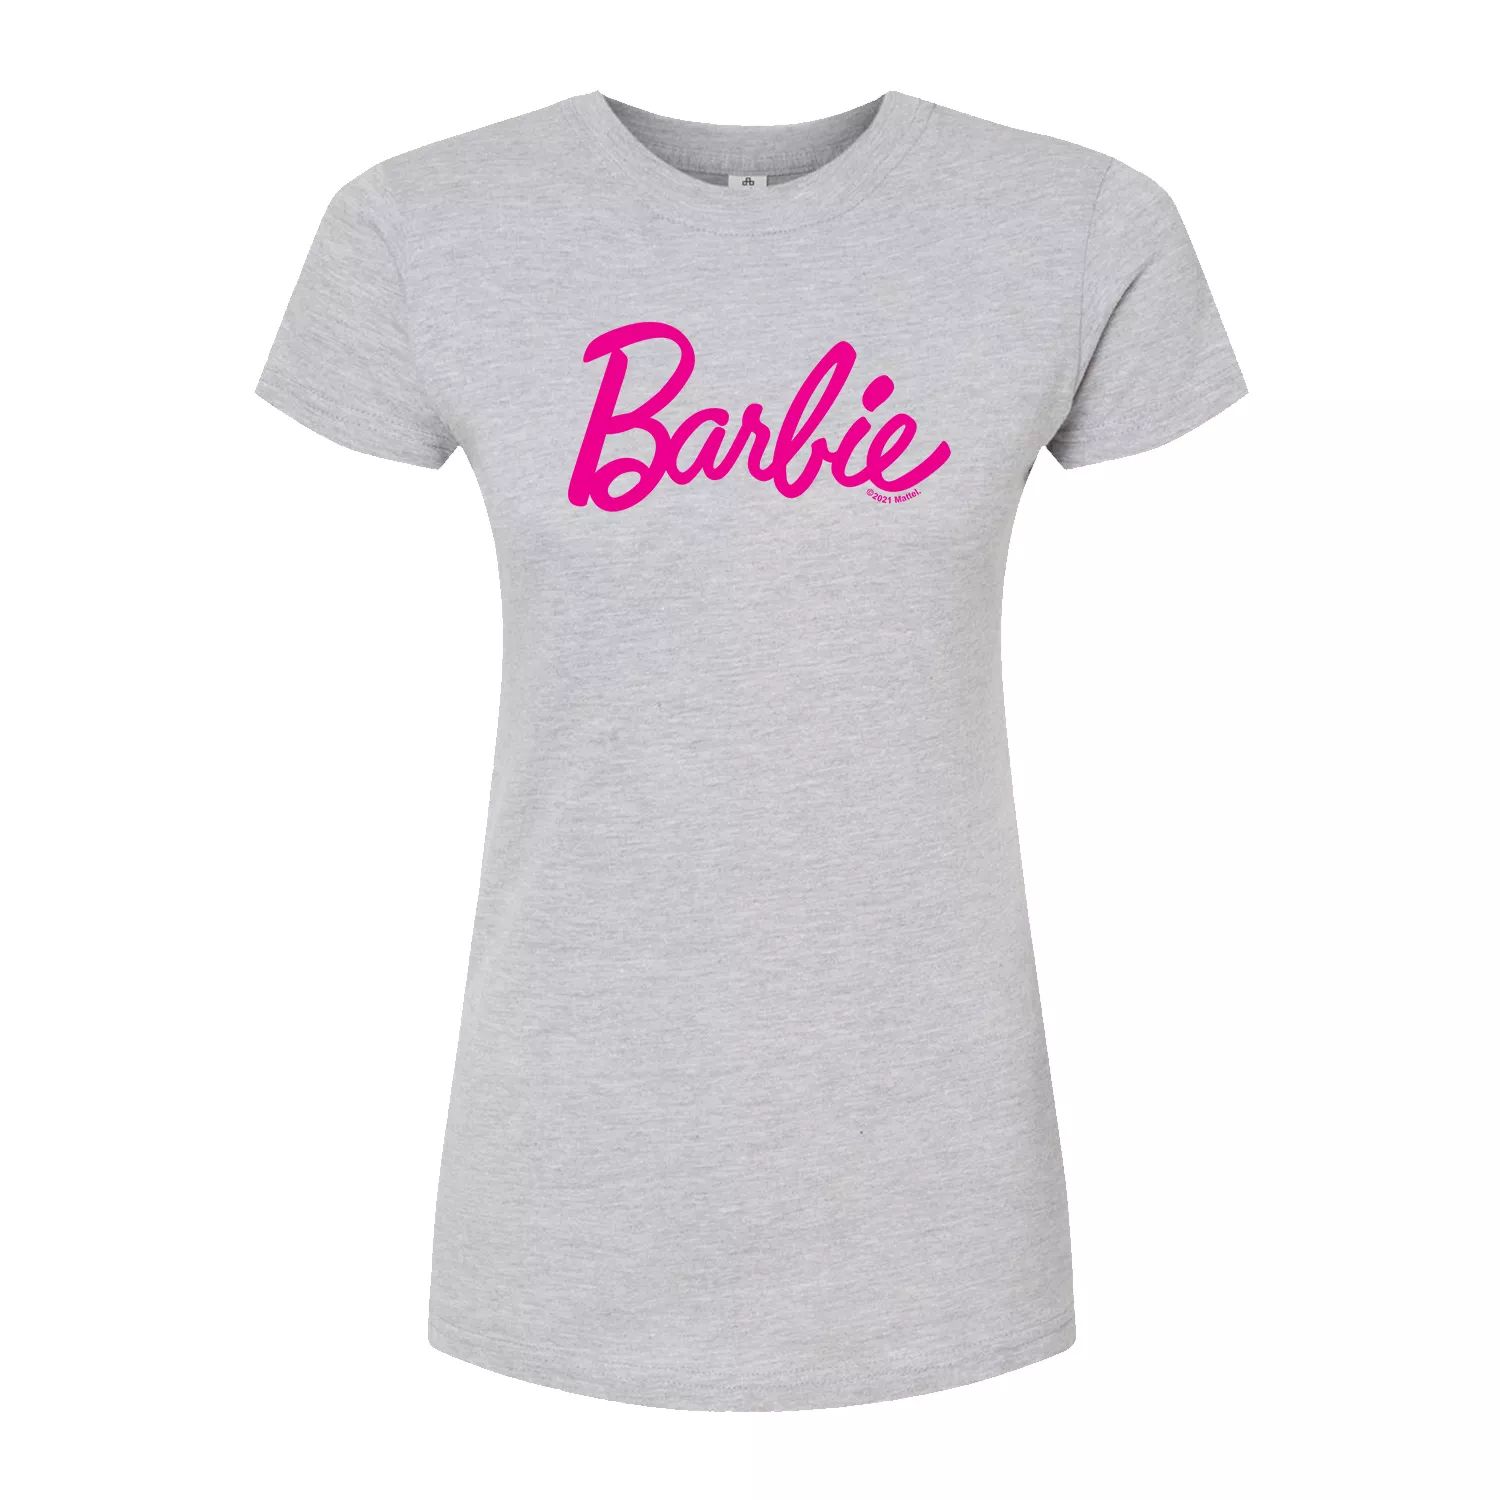 Классическая футболка с логотипом Barbie для юниоров Licensed Character, серый классическая футболка с логотипом barbie для юниоров licensed character